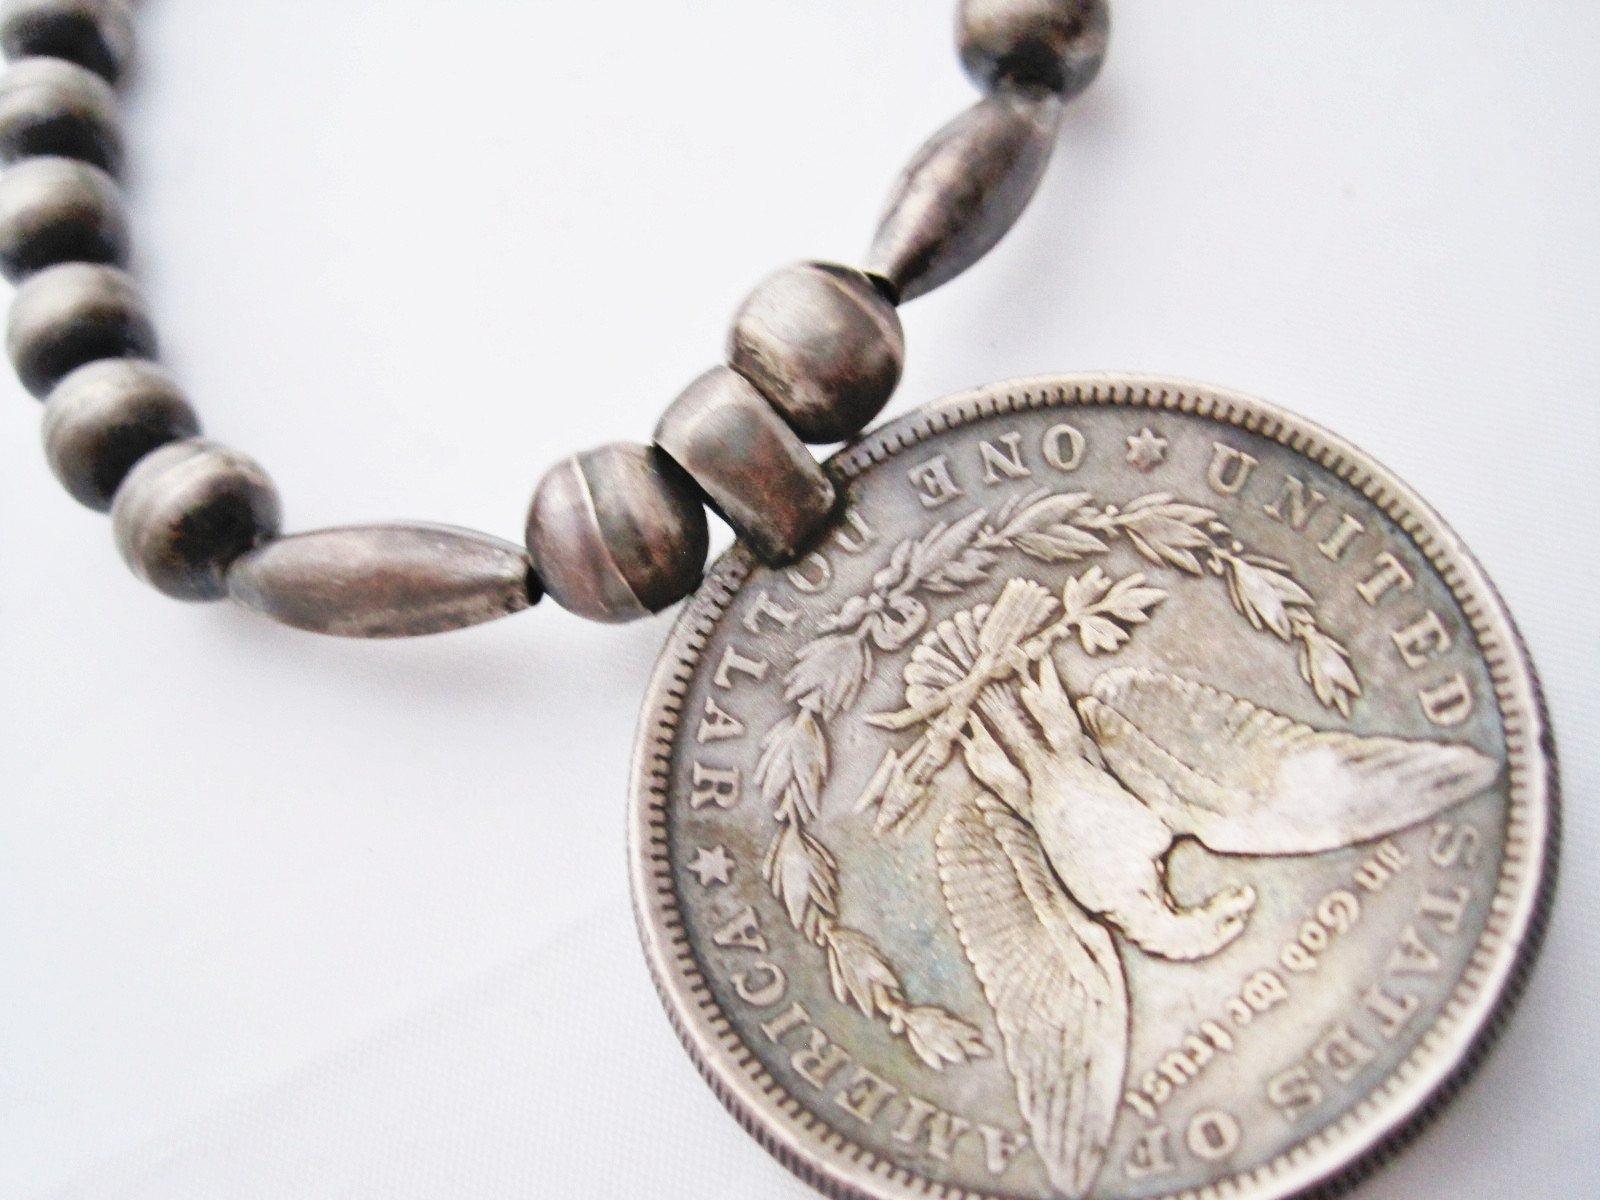 Navajo silver necklace